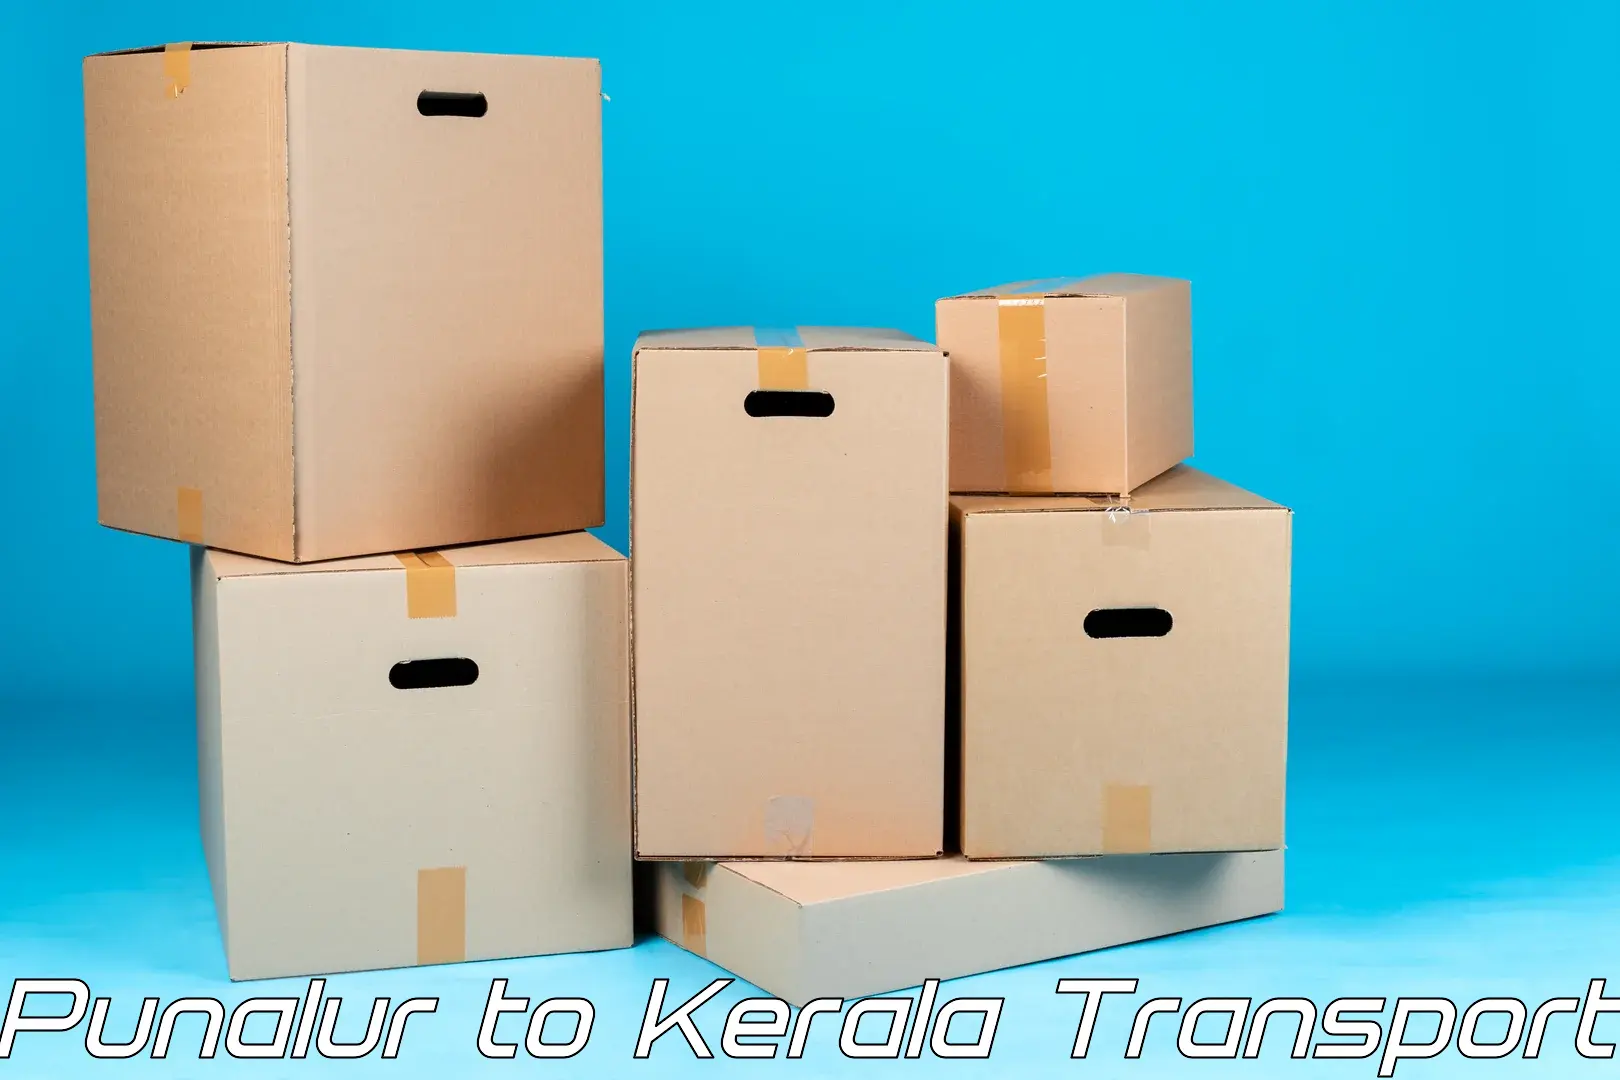 Furniture transport service Punalur to Kottarakkara